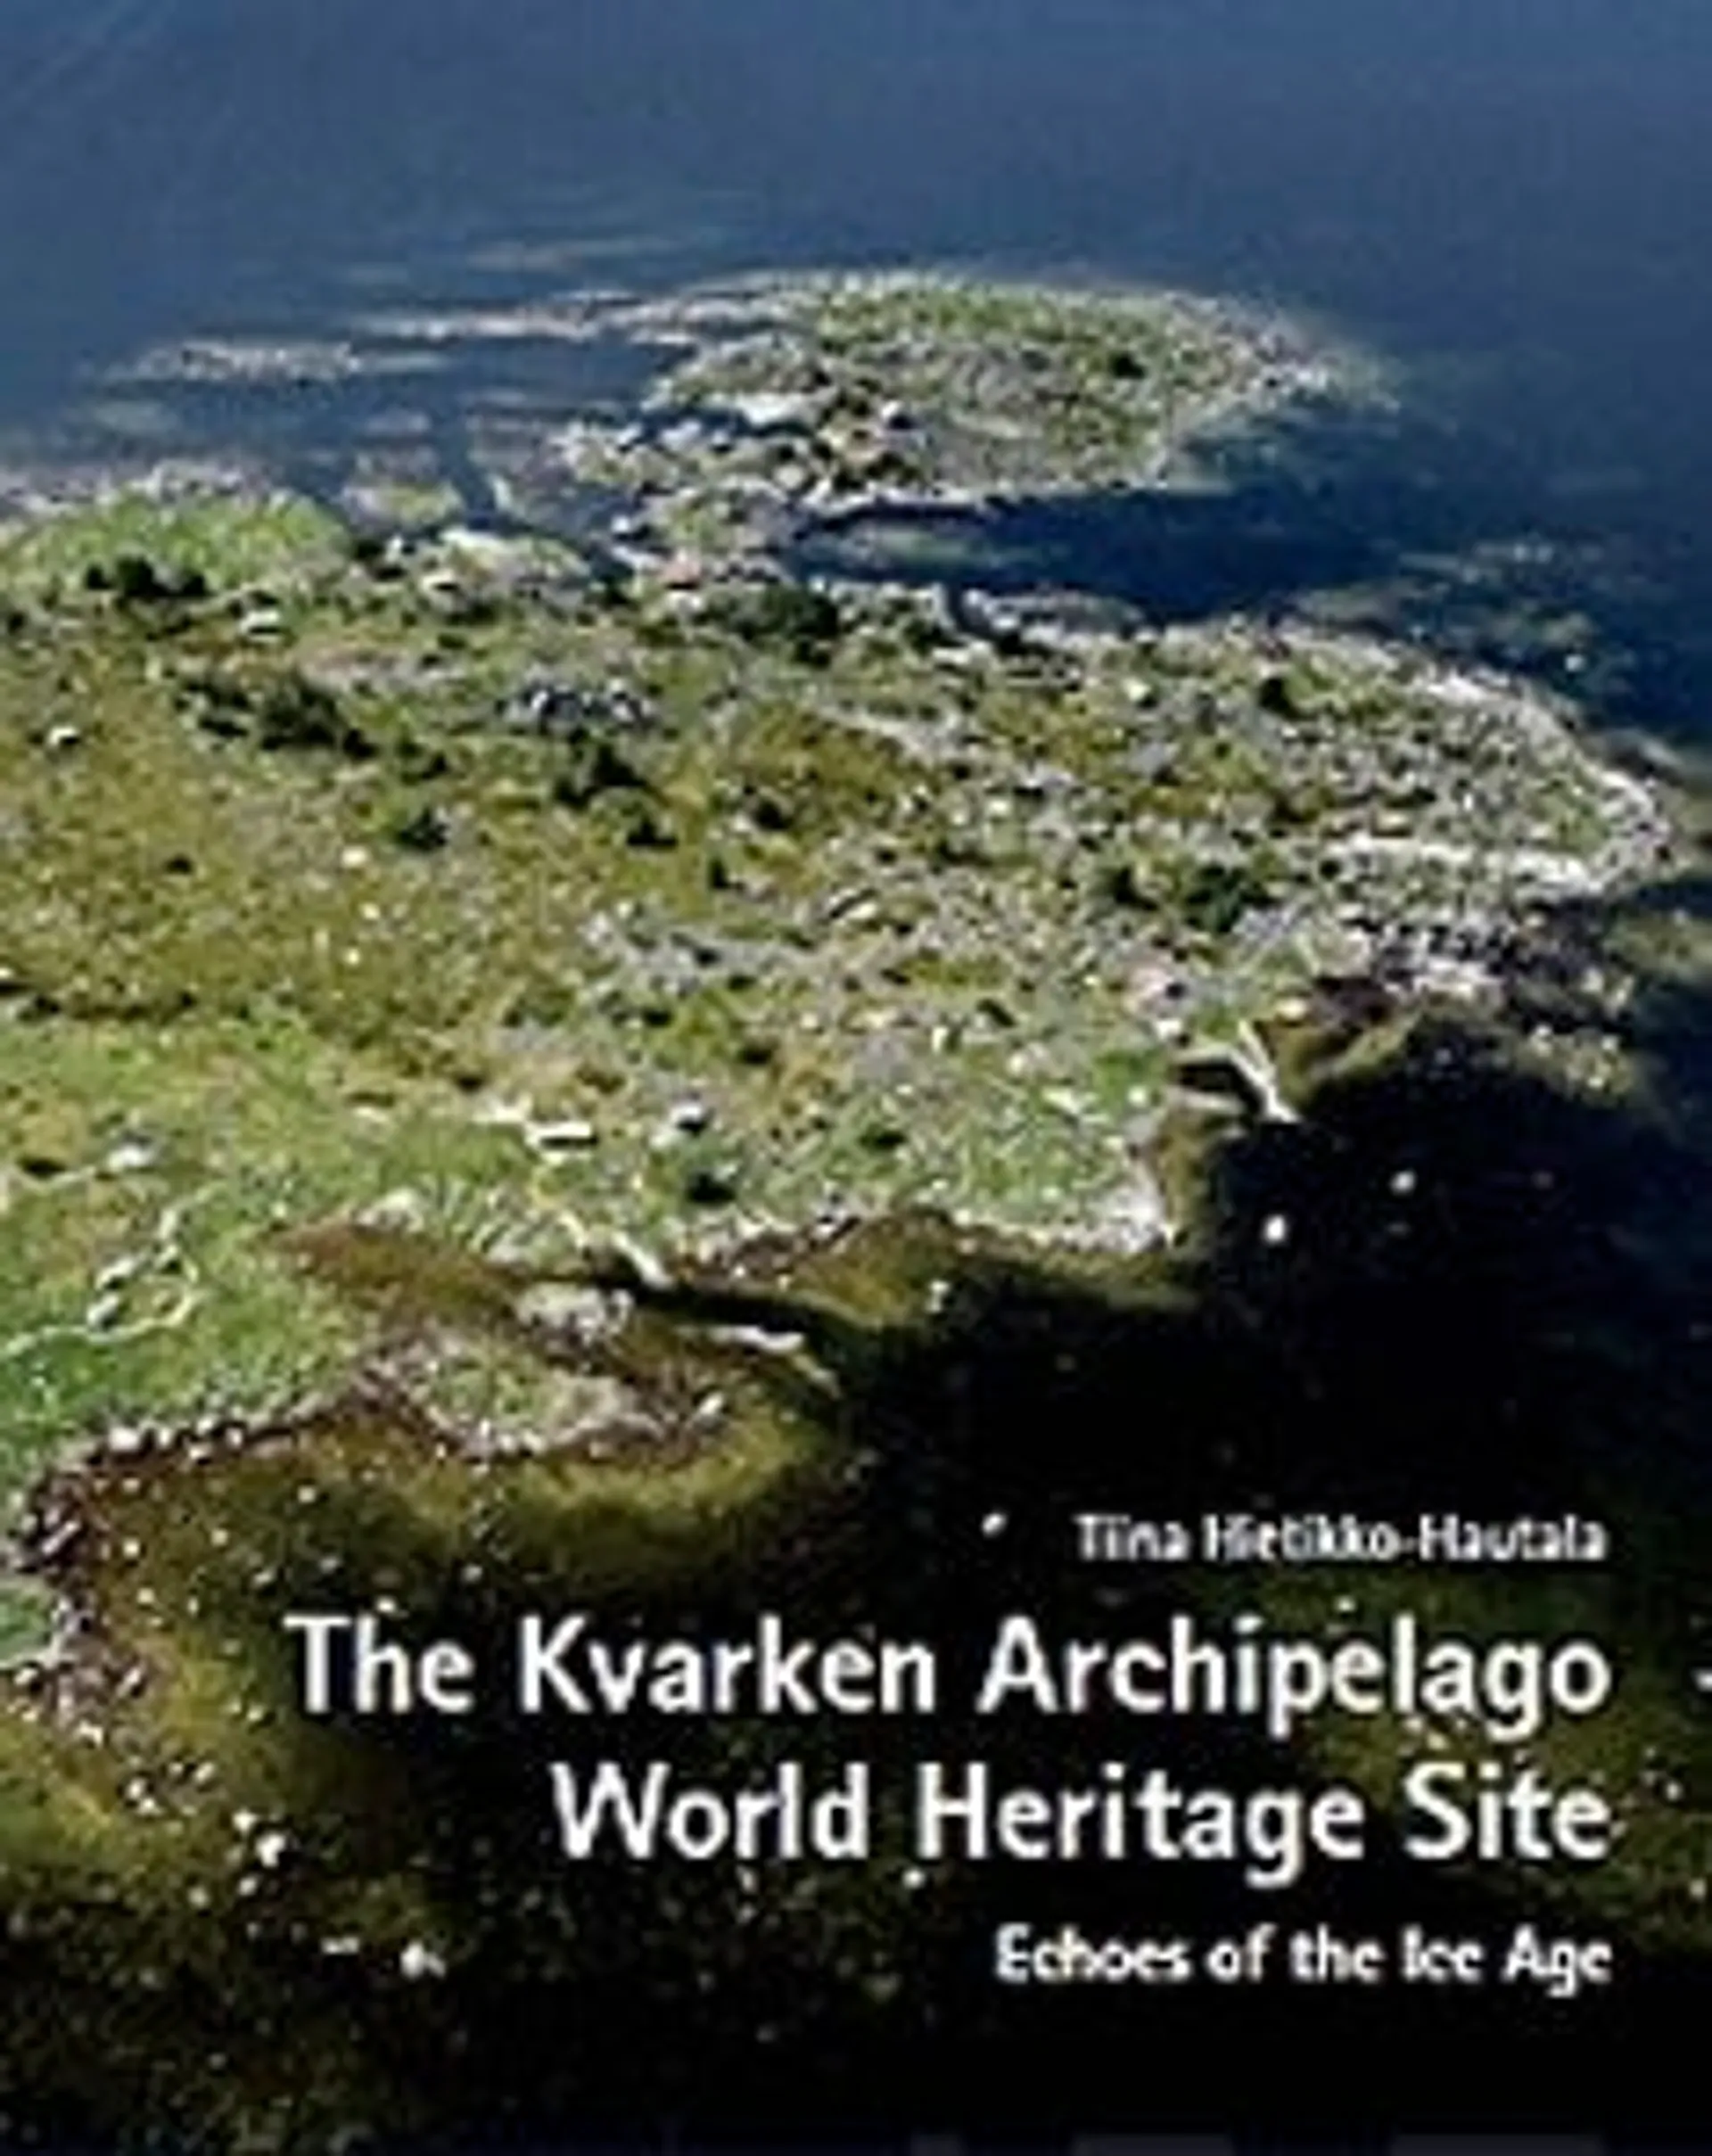 Hietikko-Hautala, The Kvarken Archipelago World Heritage Site